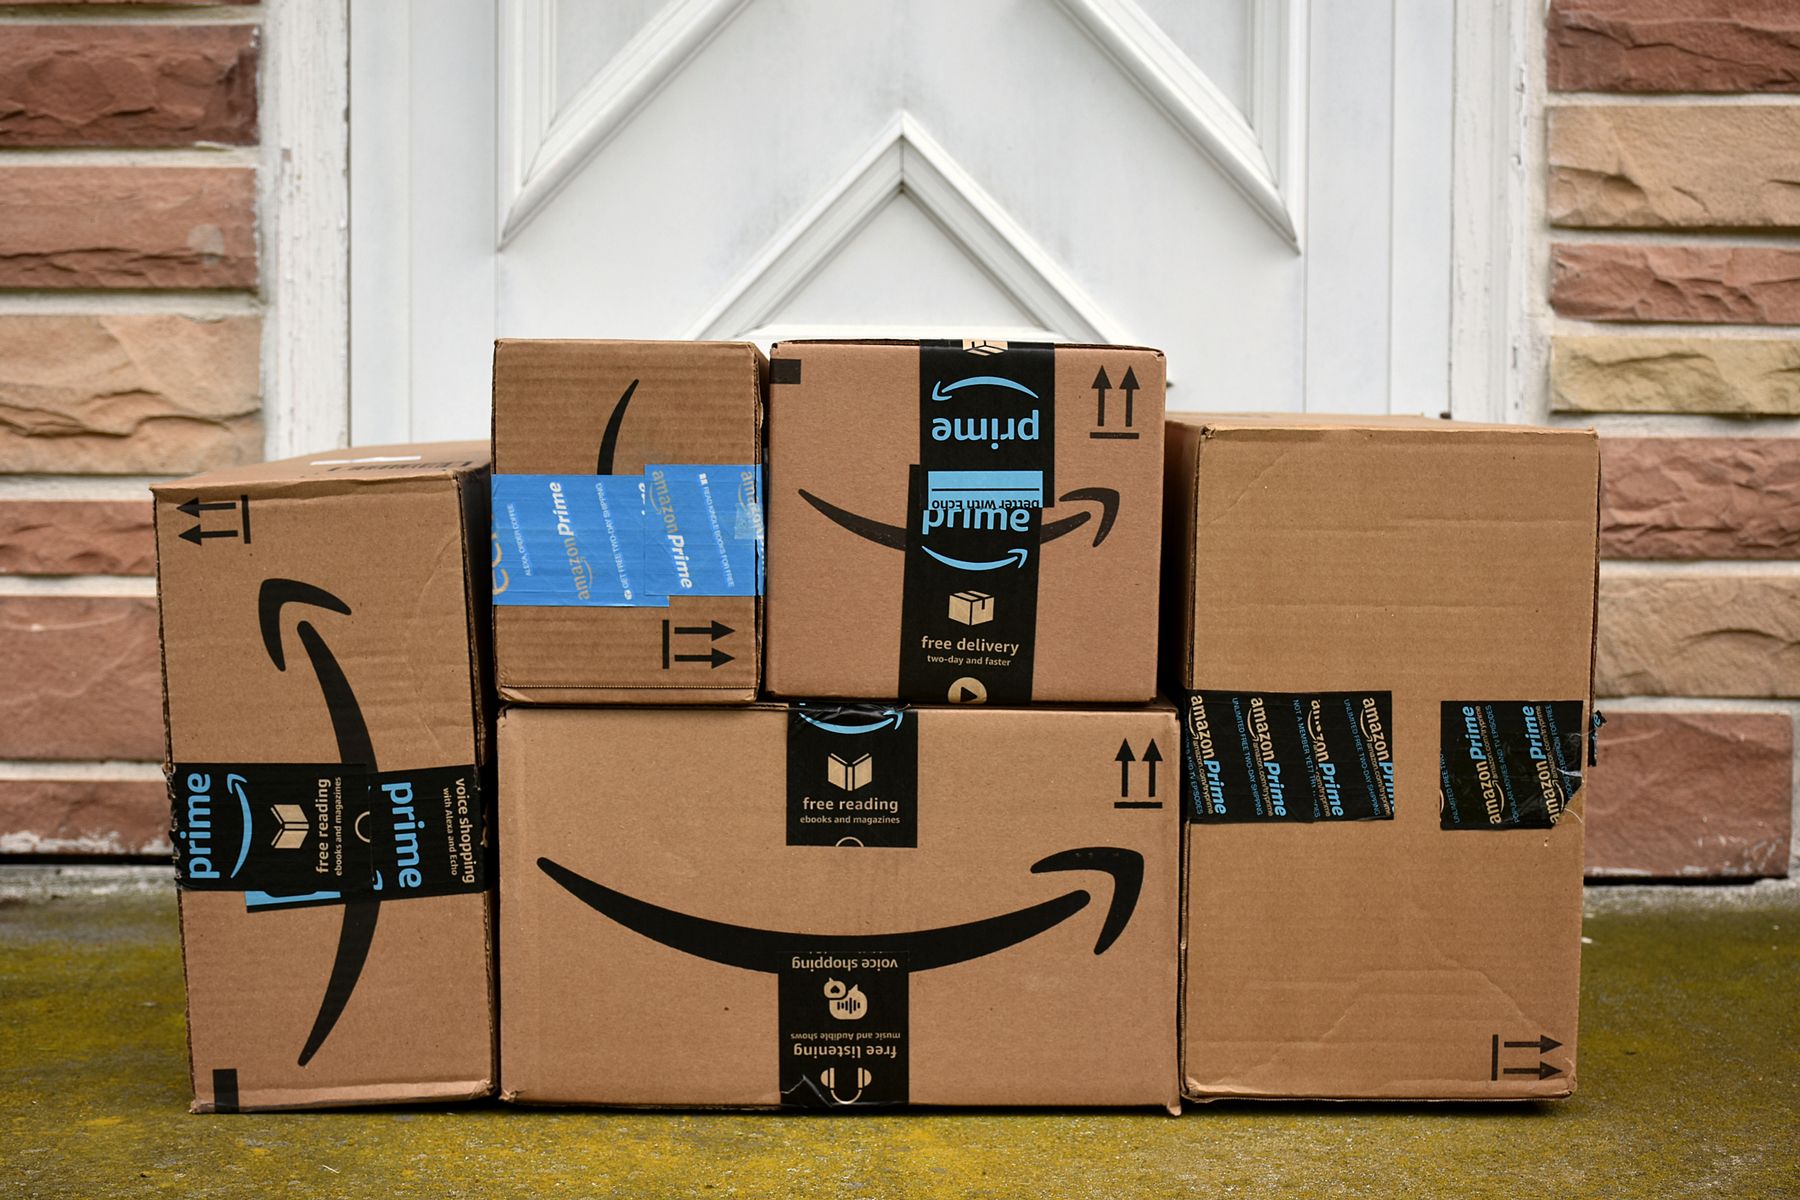 Amazon propose la livraison gratuite pour les fêtes, à tout le monde